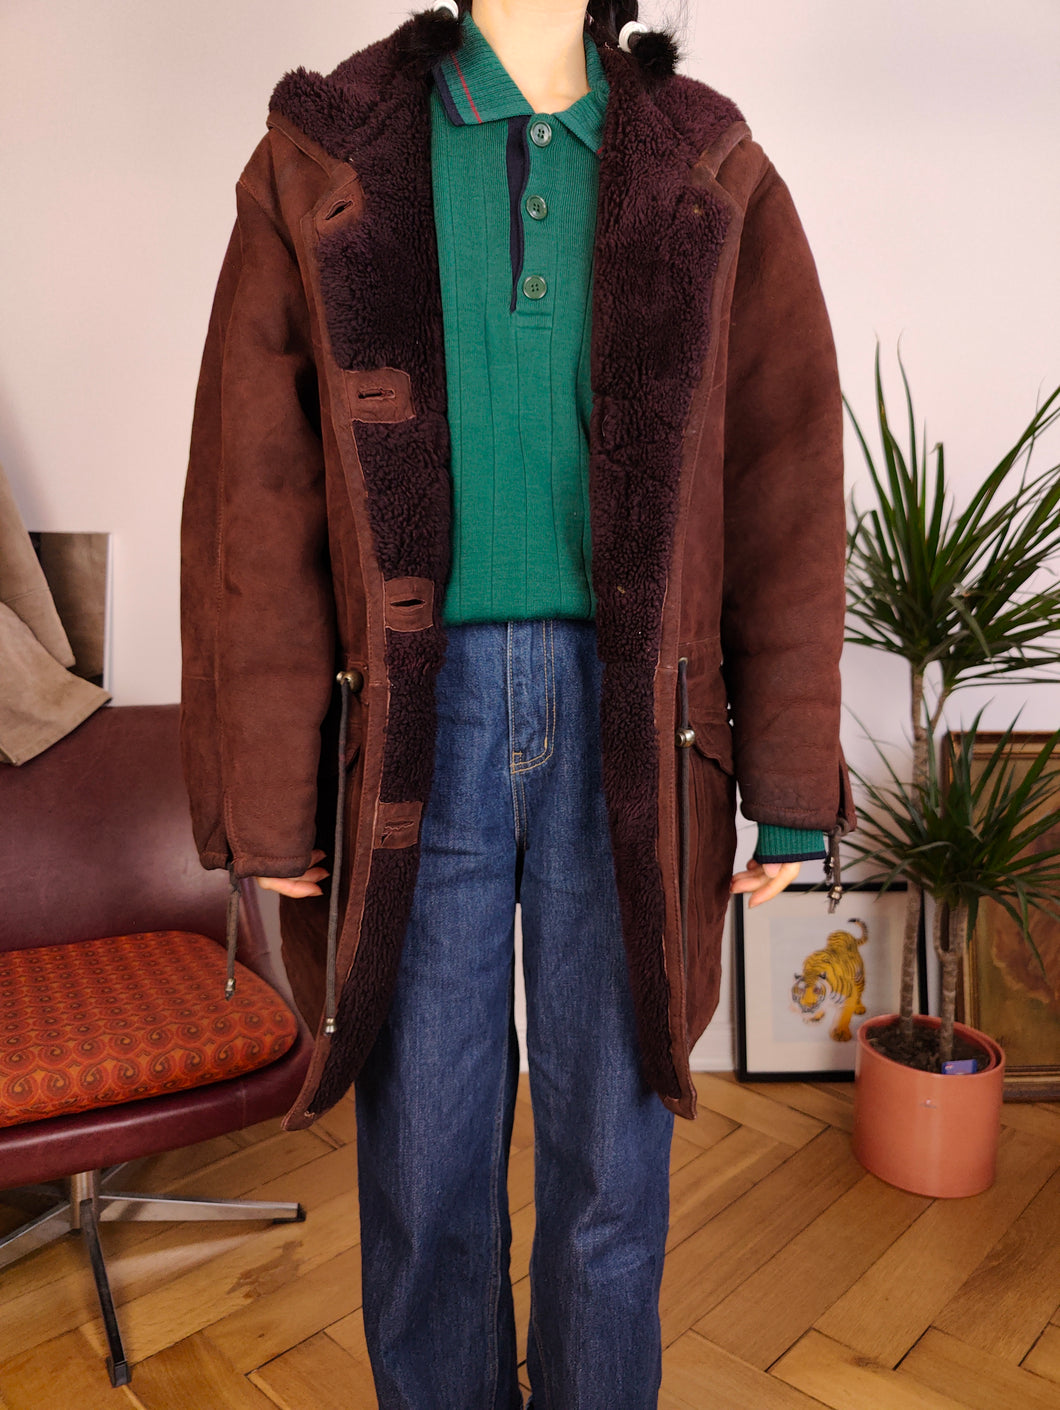 Vintage genuine shearling leather coat hood hoodie red brown sheepskin lambskin suede sherpa Italy IT46 S-M